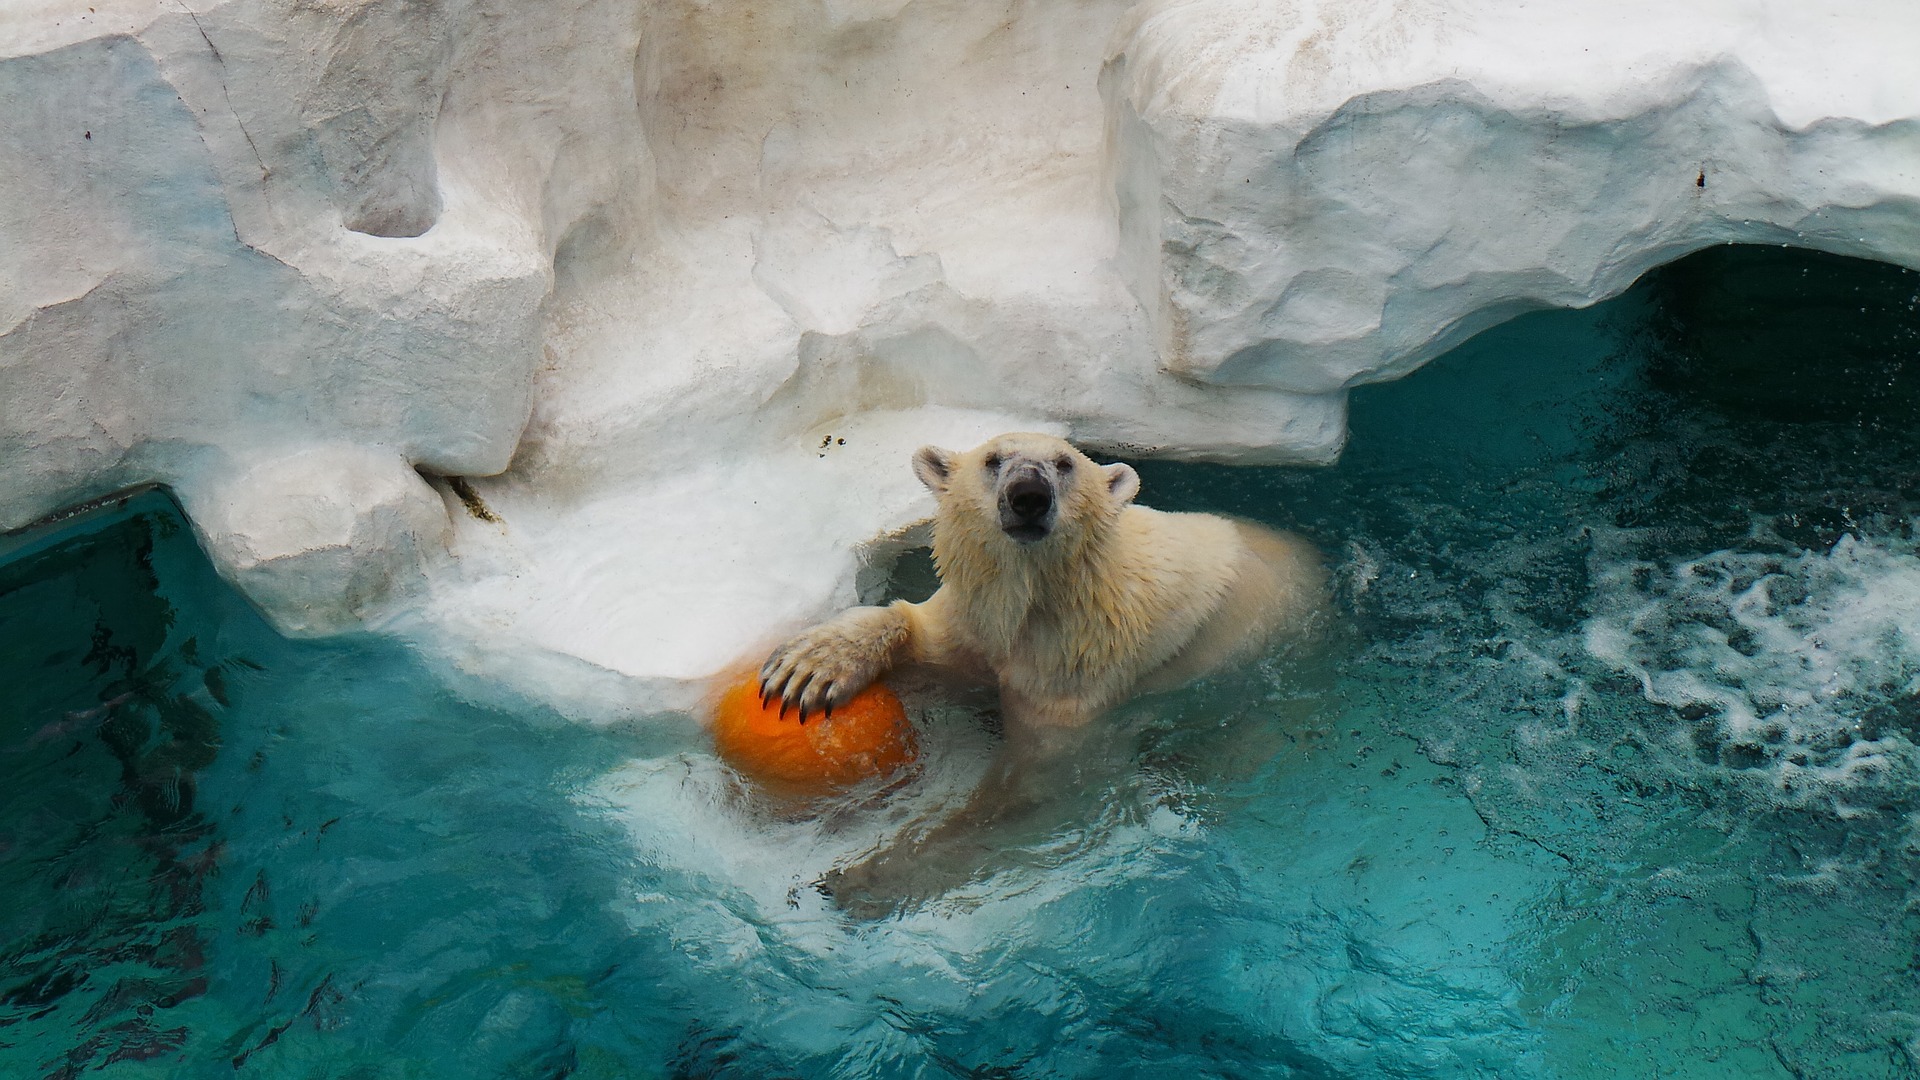 В Московском зоопарке появятся павильоны «Арктика» и «Амазония» с климатическим управлением